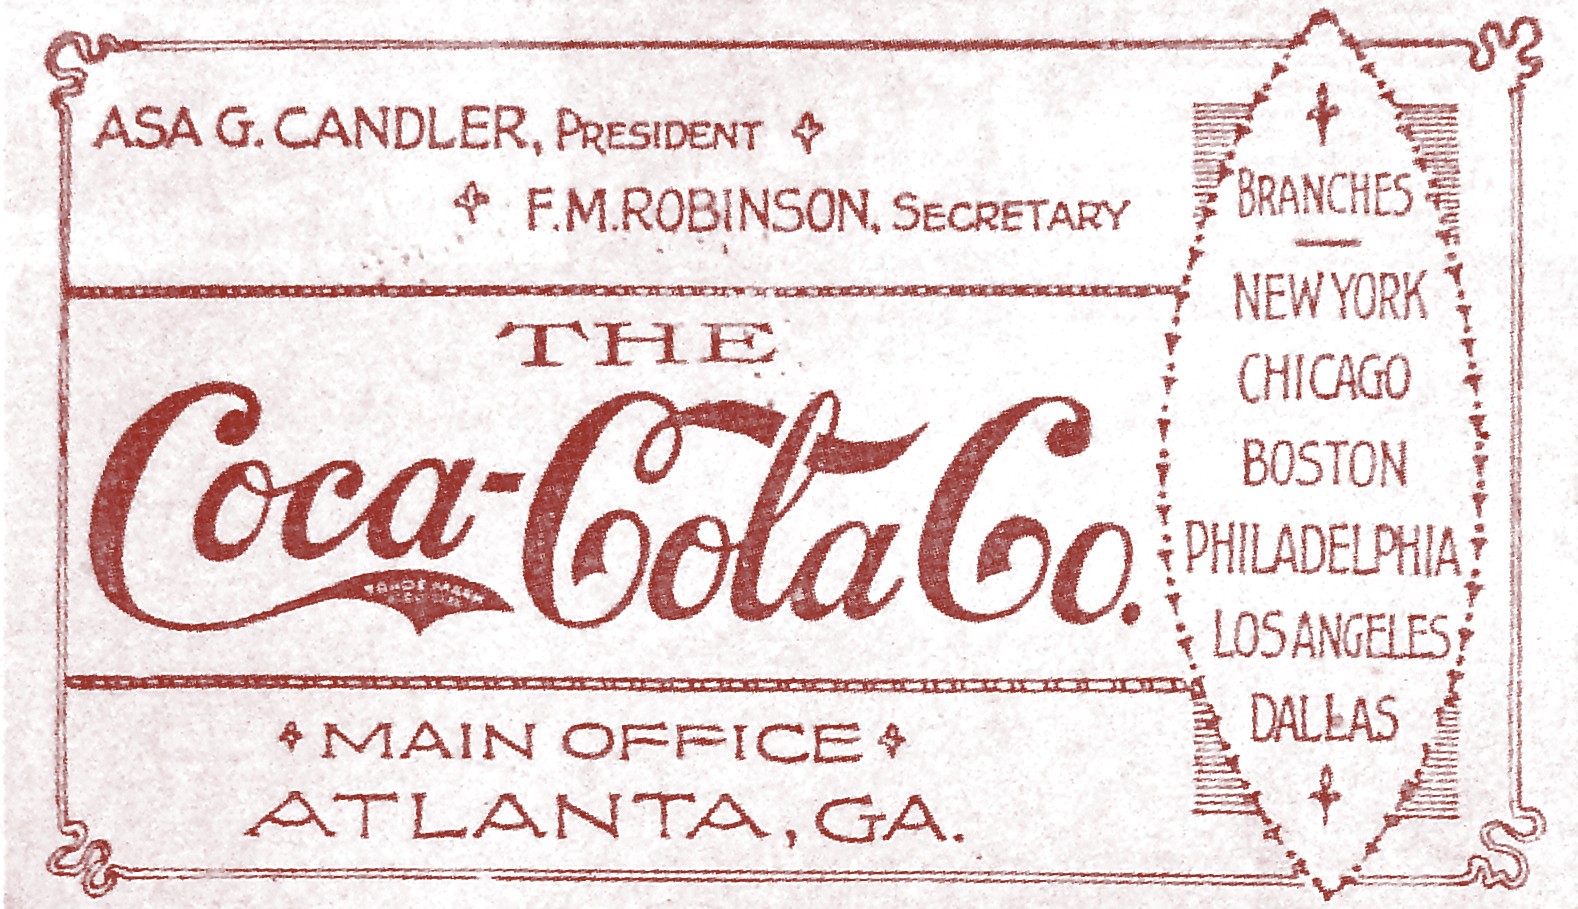 Chronologie : la bouteille Coca-Cola à travers l'histoire